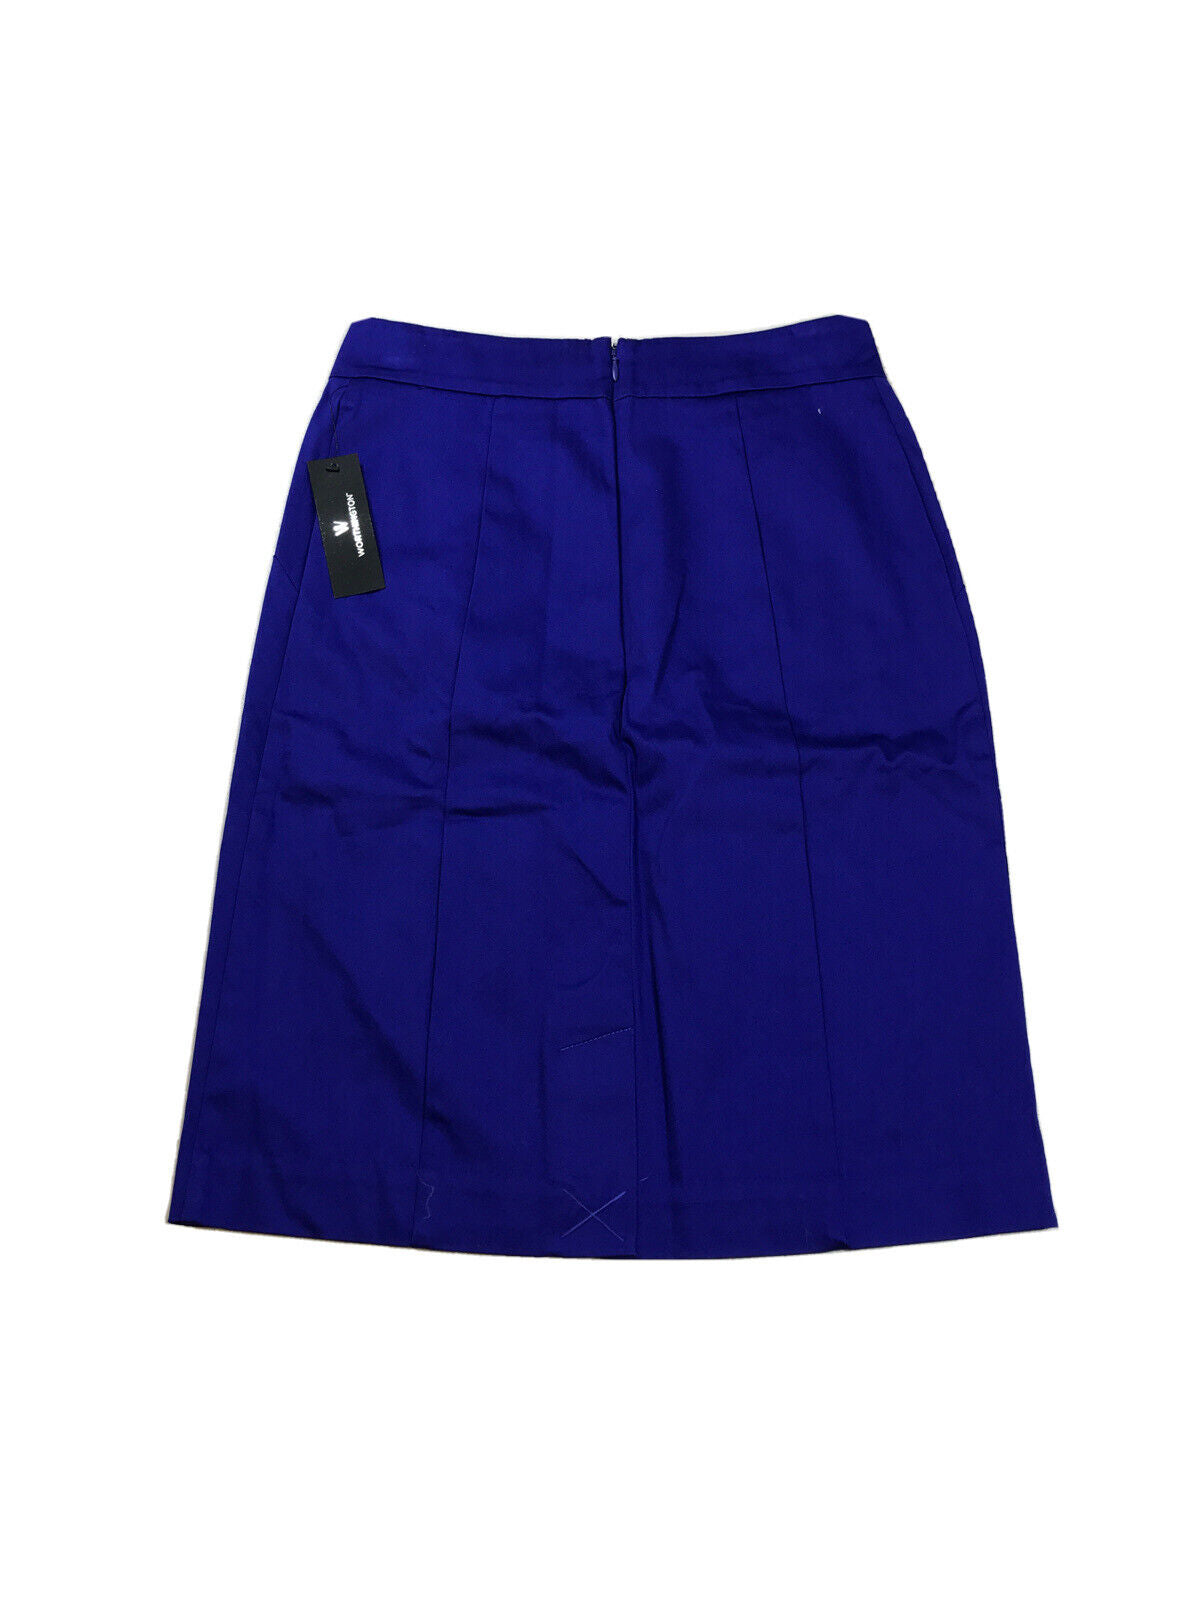 NUEVO Falda de tubo azul hasta la rodilla Worthington para mujer - 4